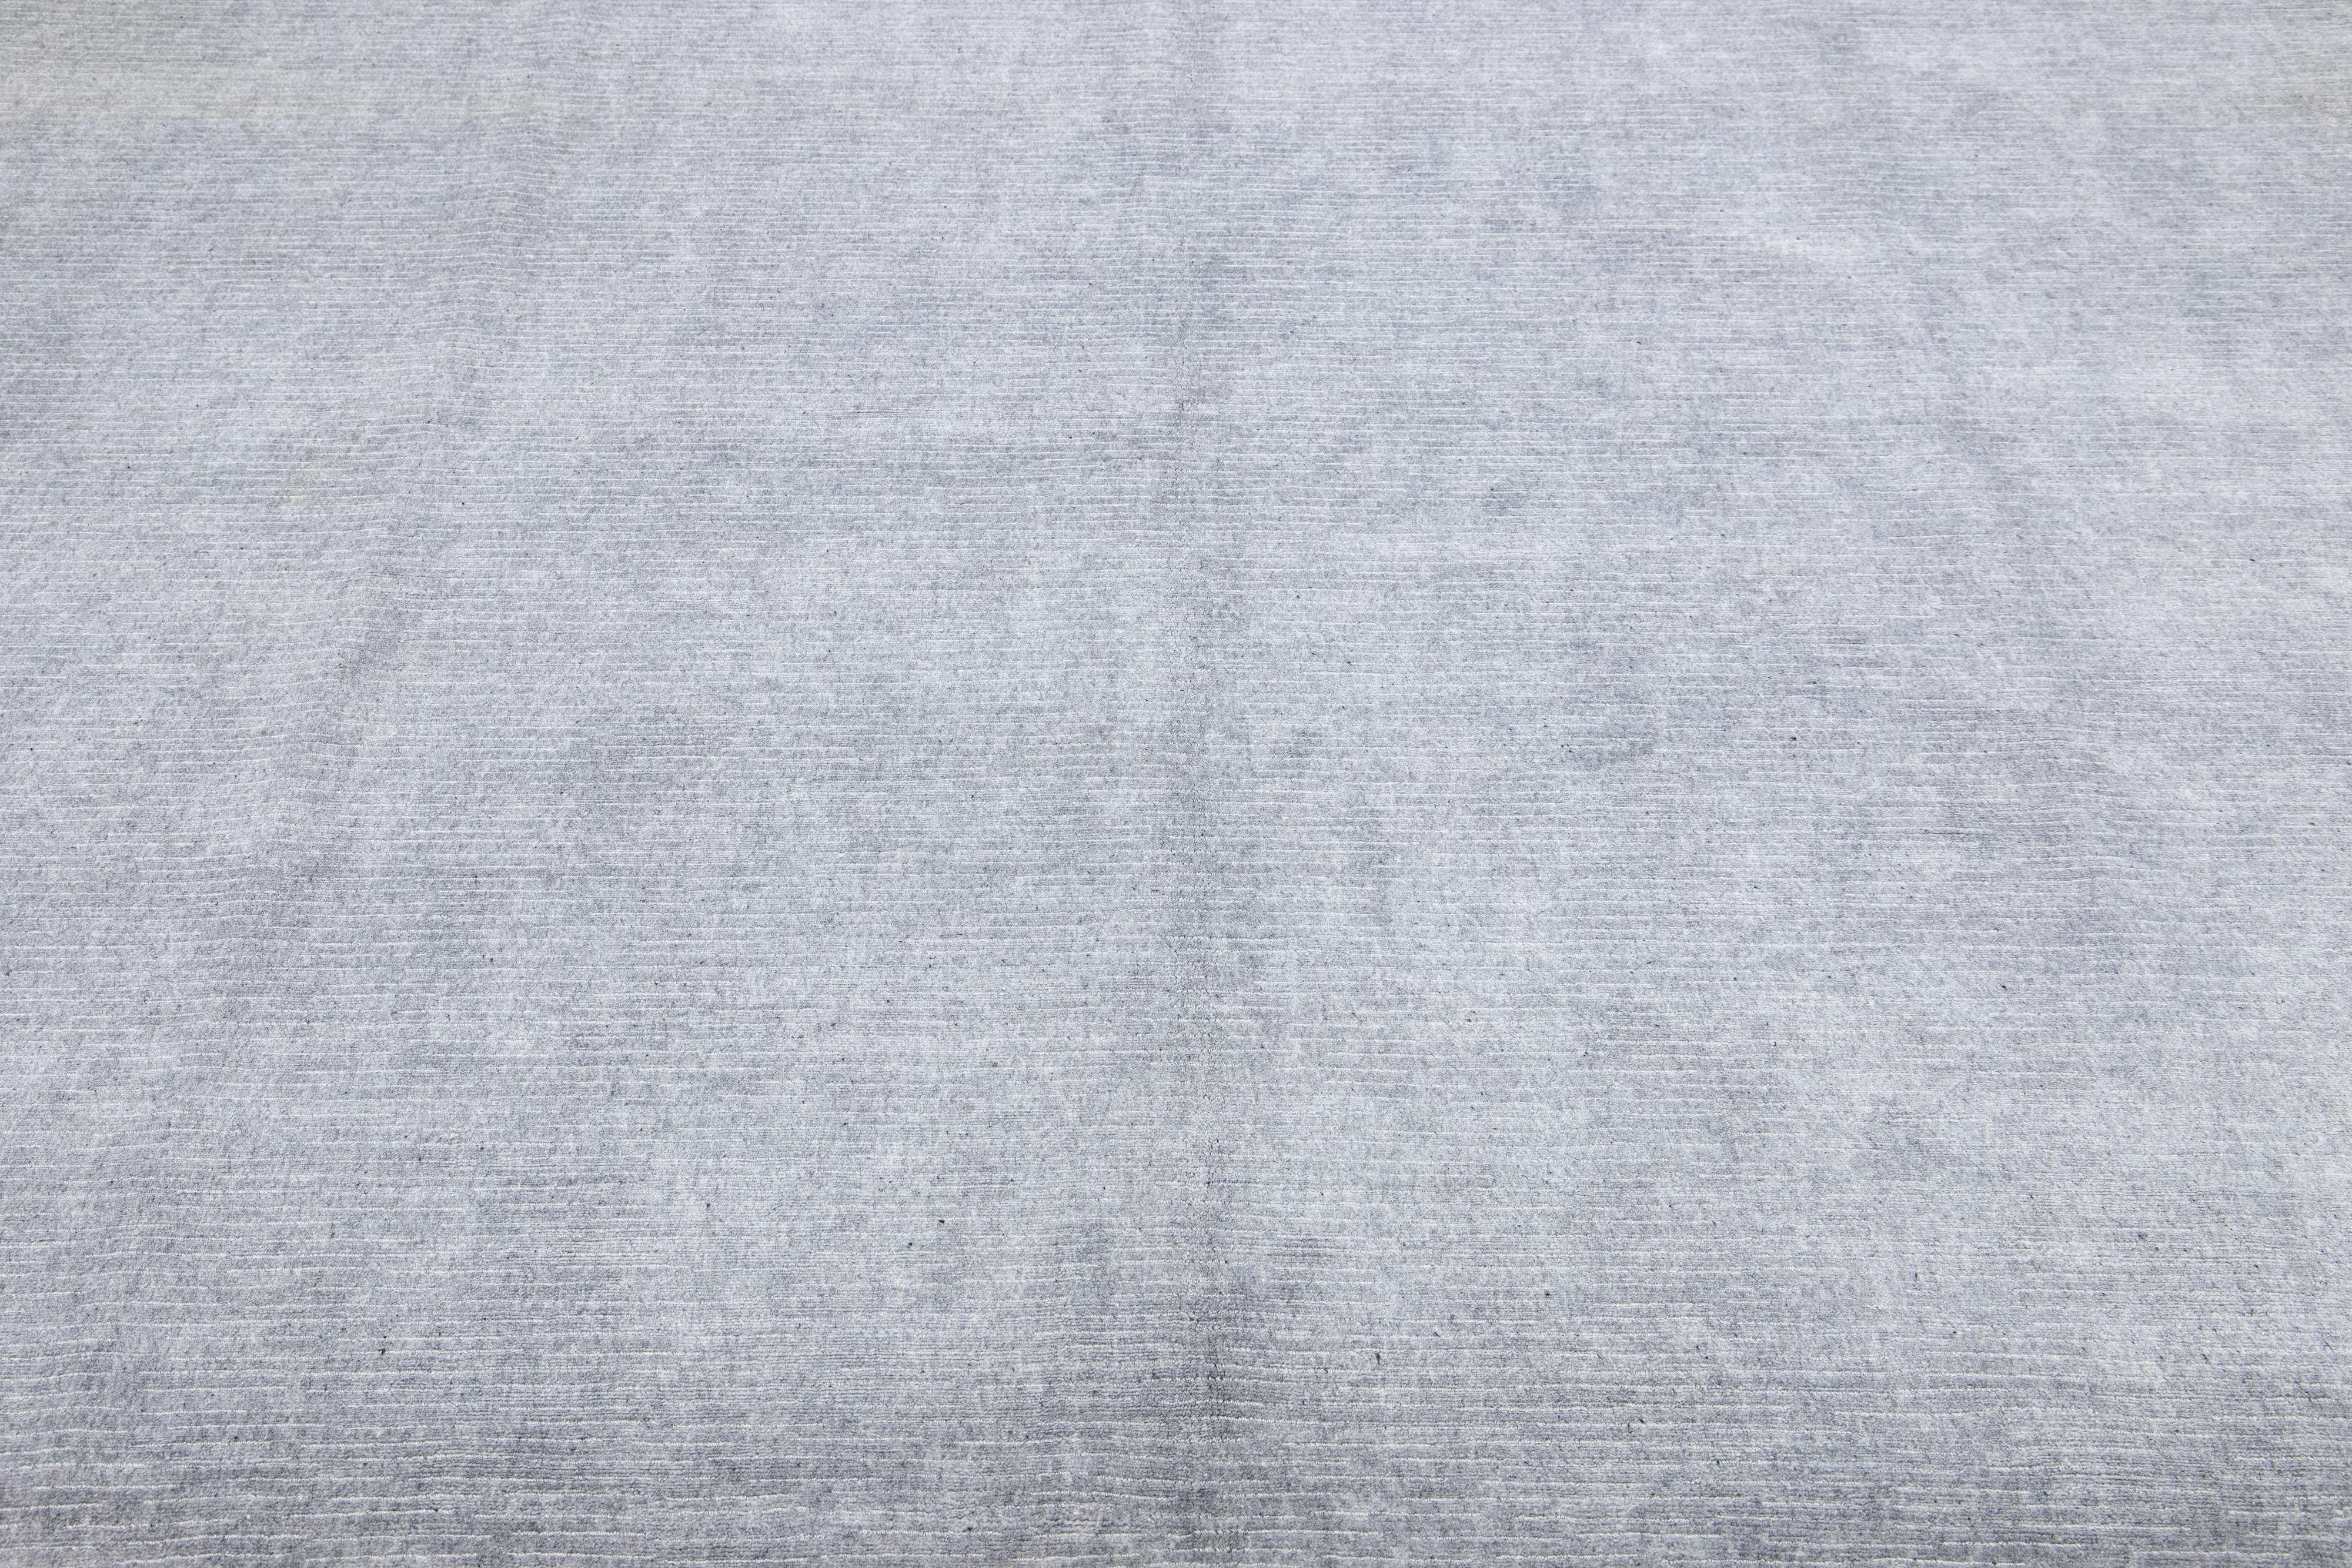 Schöne Apadana's handgefertigte Bambus & Seide indischen Rillen Teppich mit grauen Farben Feld. Dieser Teppich aus der Groove Collection hat ein durchgehendes Streifendesign.

Dieser Teppich misst 9'1